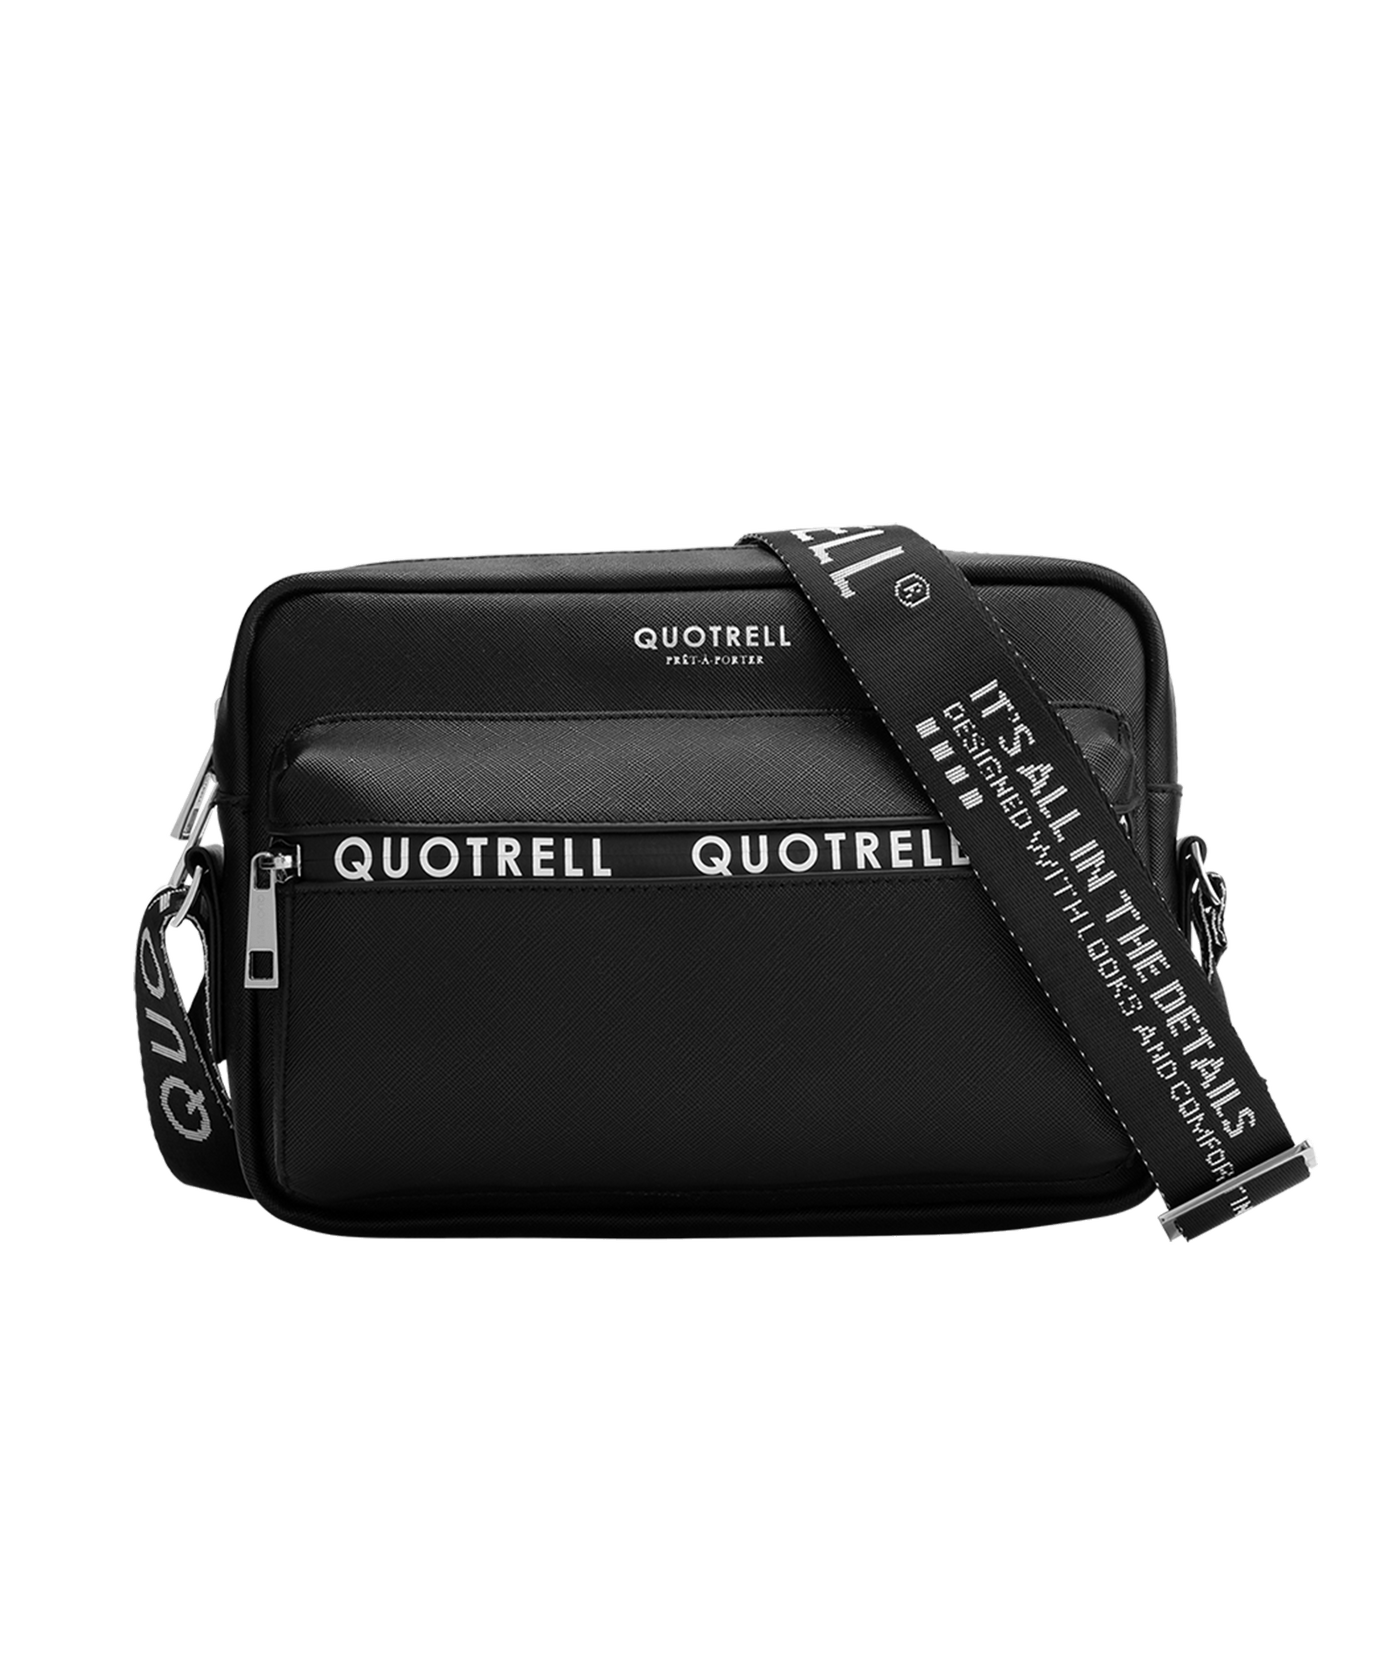 Quotrell - Brantford - Bag - Black/white